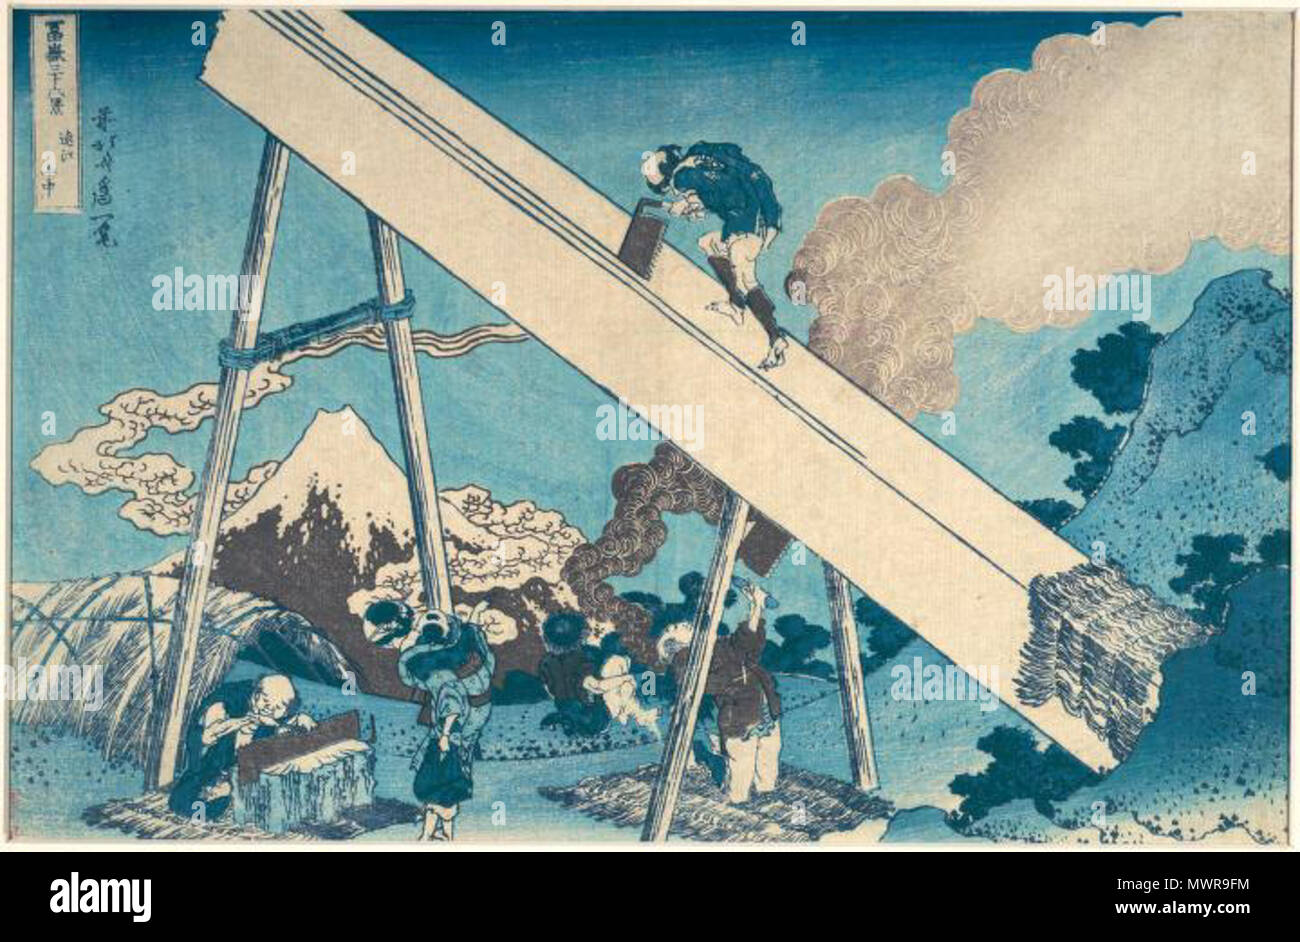 . Anglais : Titre : sanchū Tōtōmi (dans les montagnes de Totomi) Graveur : Unidentified (Japonais) Mesures : 24,2 × 36,4 cm (feuille) Technique : Nishiki-e (estampe couleur) Inscription (signature) : Zen Hokusai Iitsu hitsu . Date inconnue mais avant 1890. Après, Hokusai Katsushika (1760-1849), Japonais 545 Sawyers par Hokusai Banque D'Images